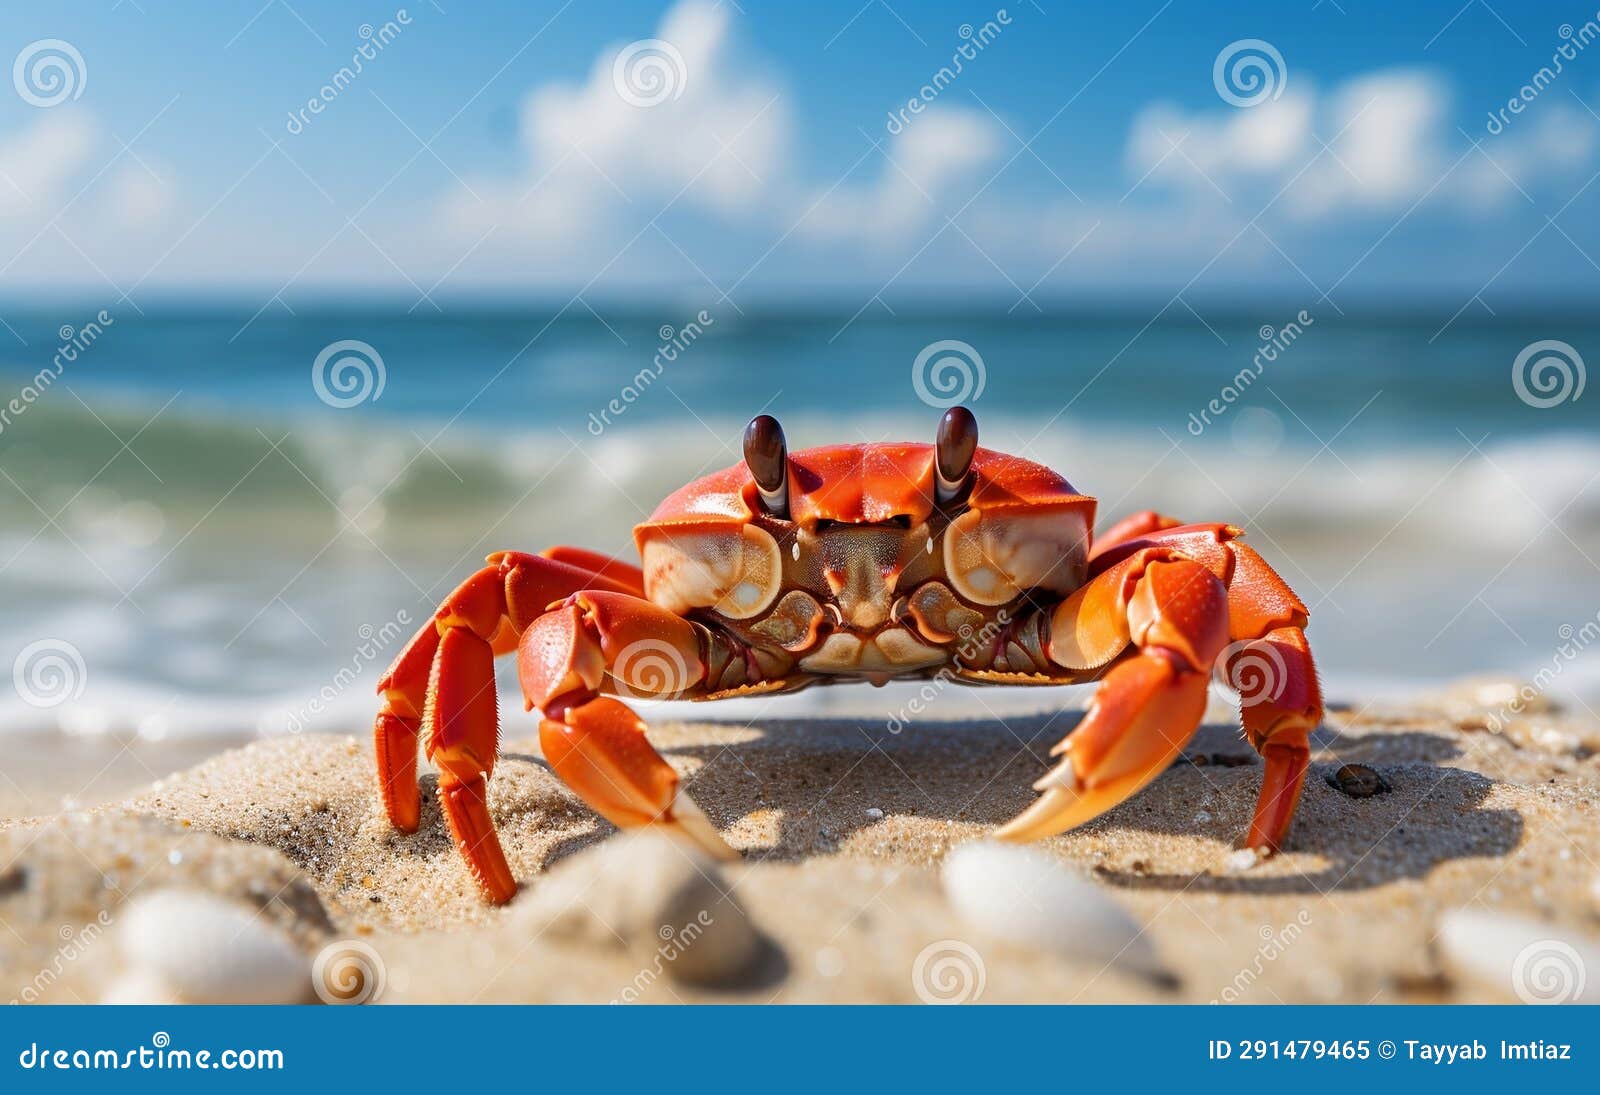 photo little cute crab at the beach by the o cean generative ai